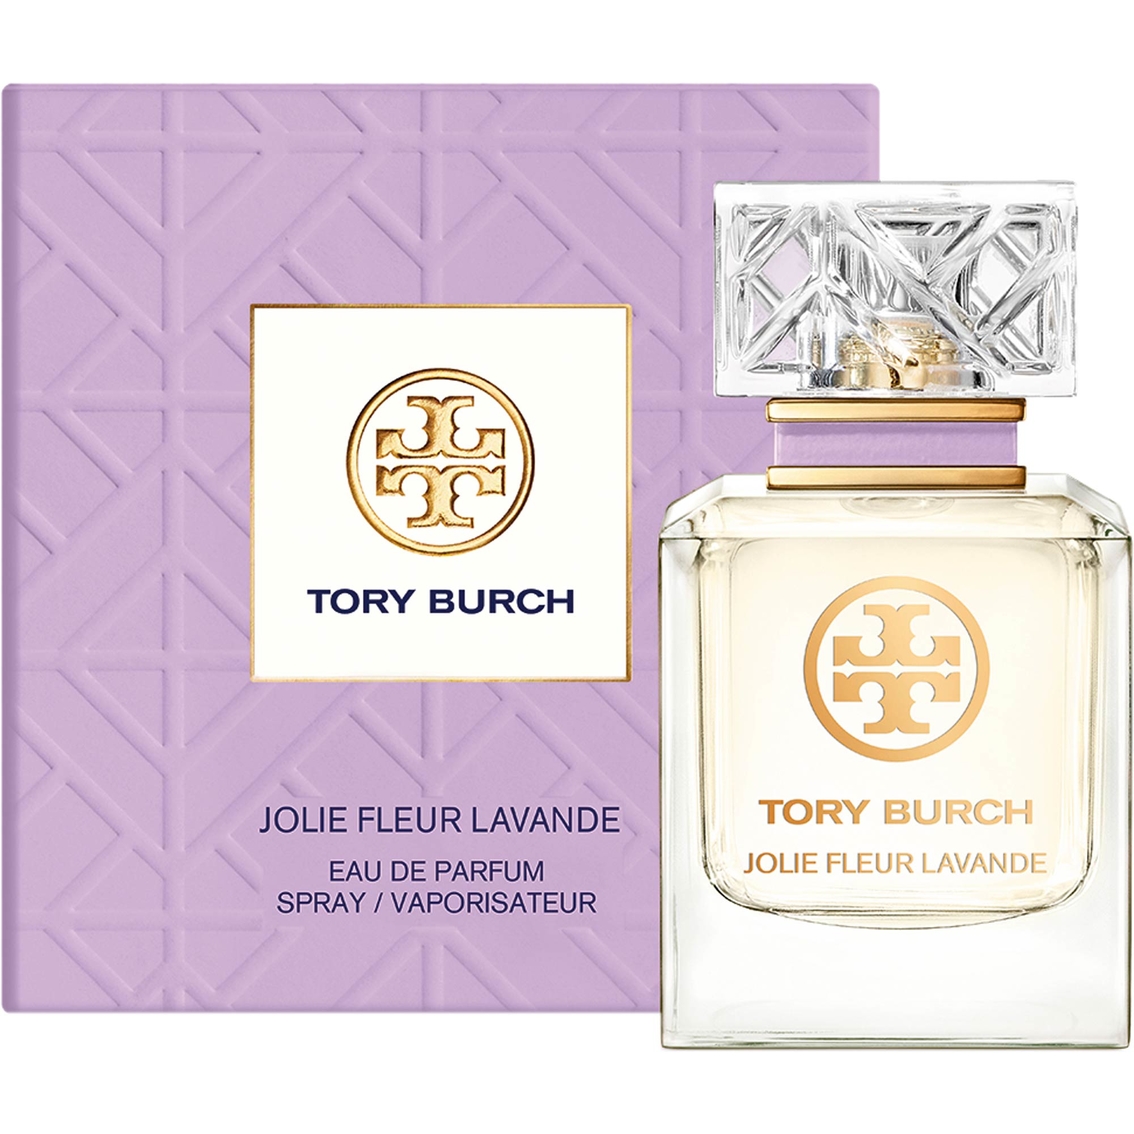 Tory Burch Jolie Fleur Lavande Eau De Parfum Spray | Women's Fragrances |  Beauty & Health | Shop The Exchange